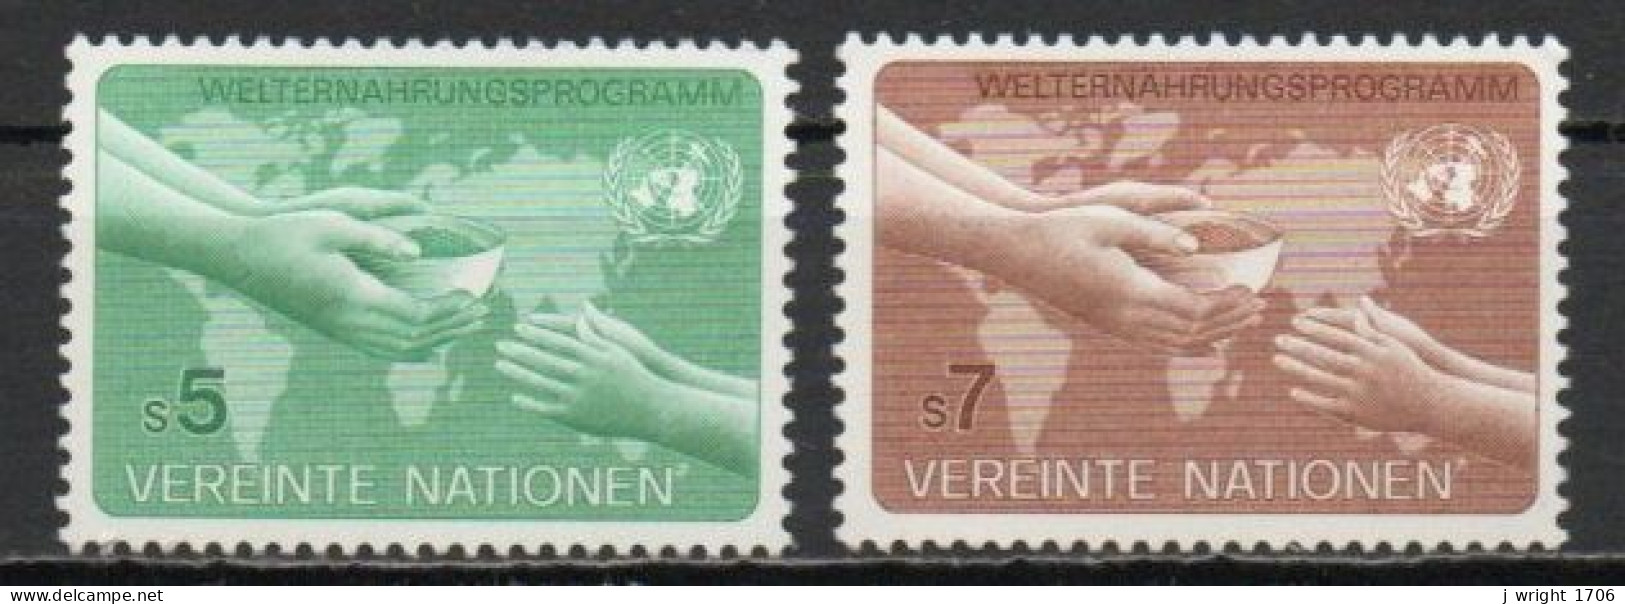 UN/Vienna, 1983, World Food Programme, Set, MNH - Nuevos